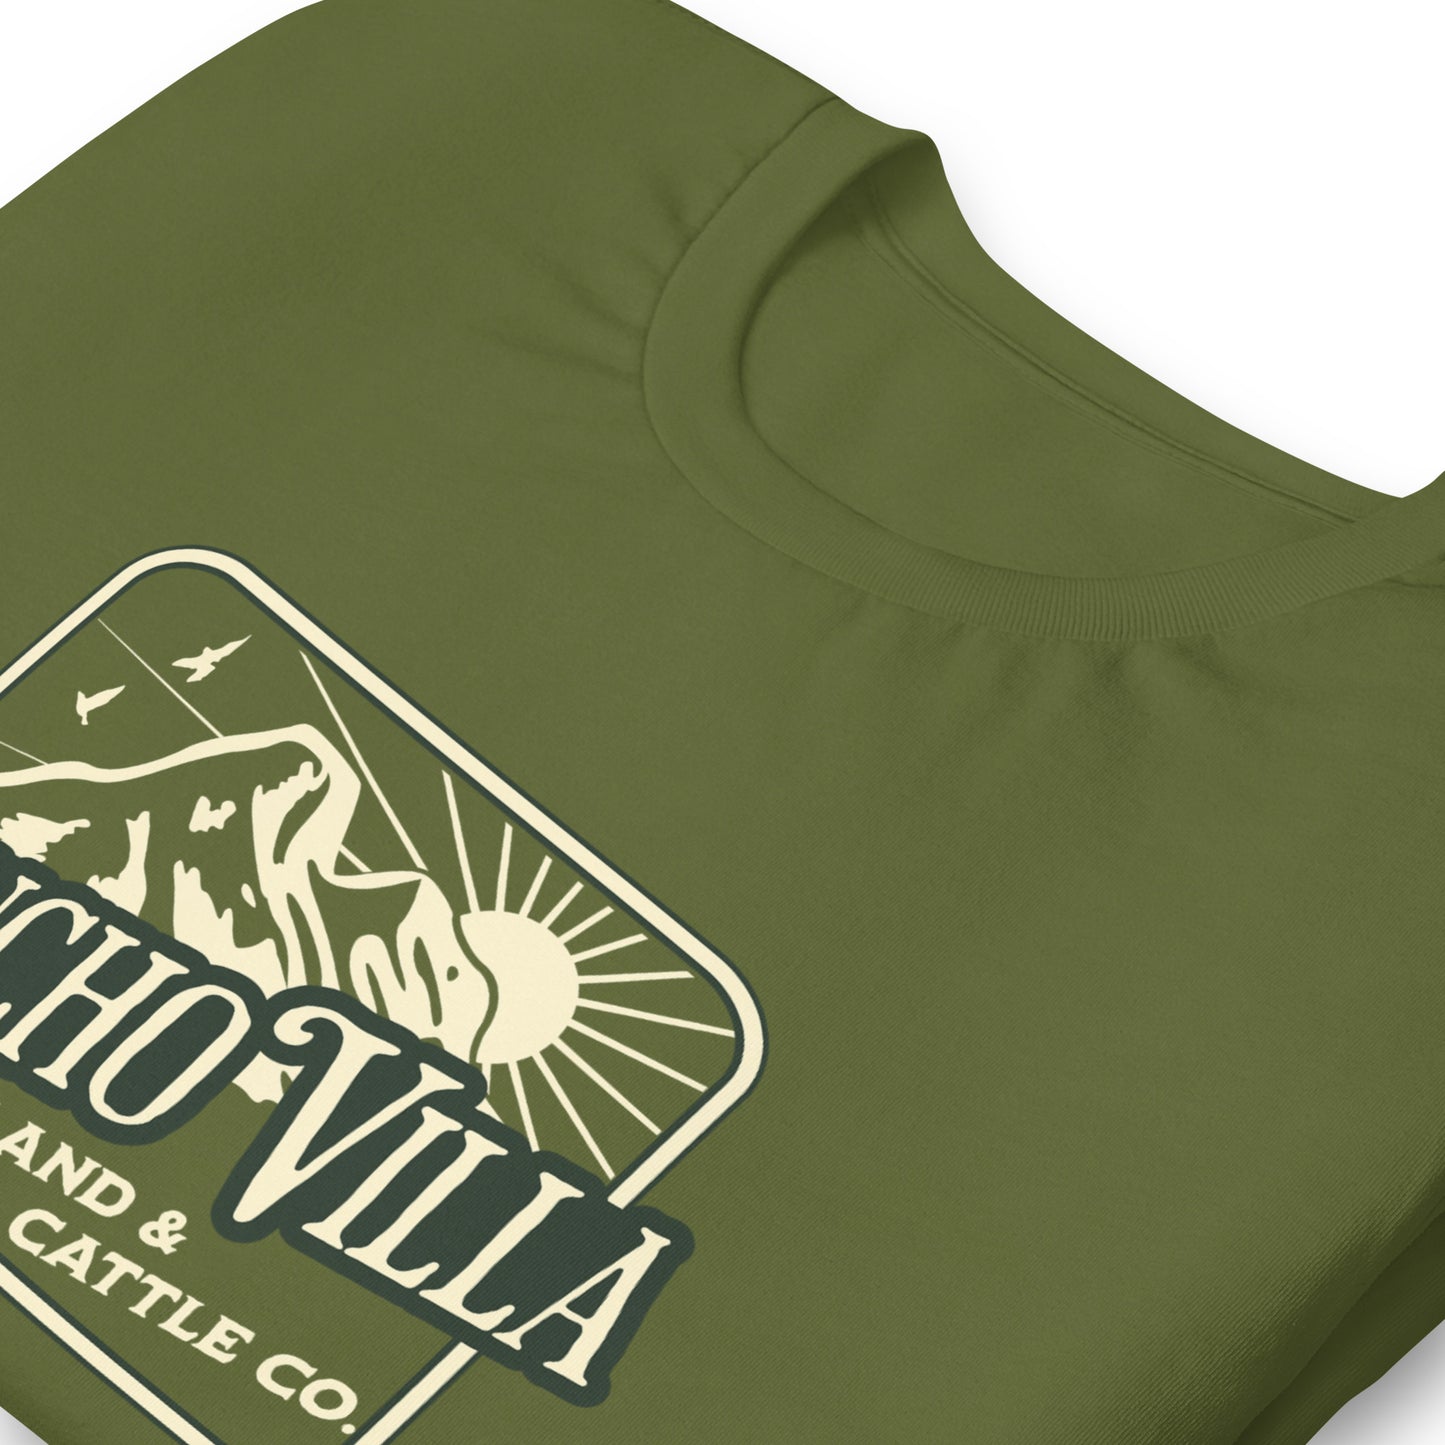 PANCHO VILLA LAND & CATTLE CO. t-shirt